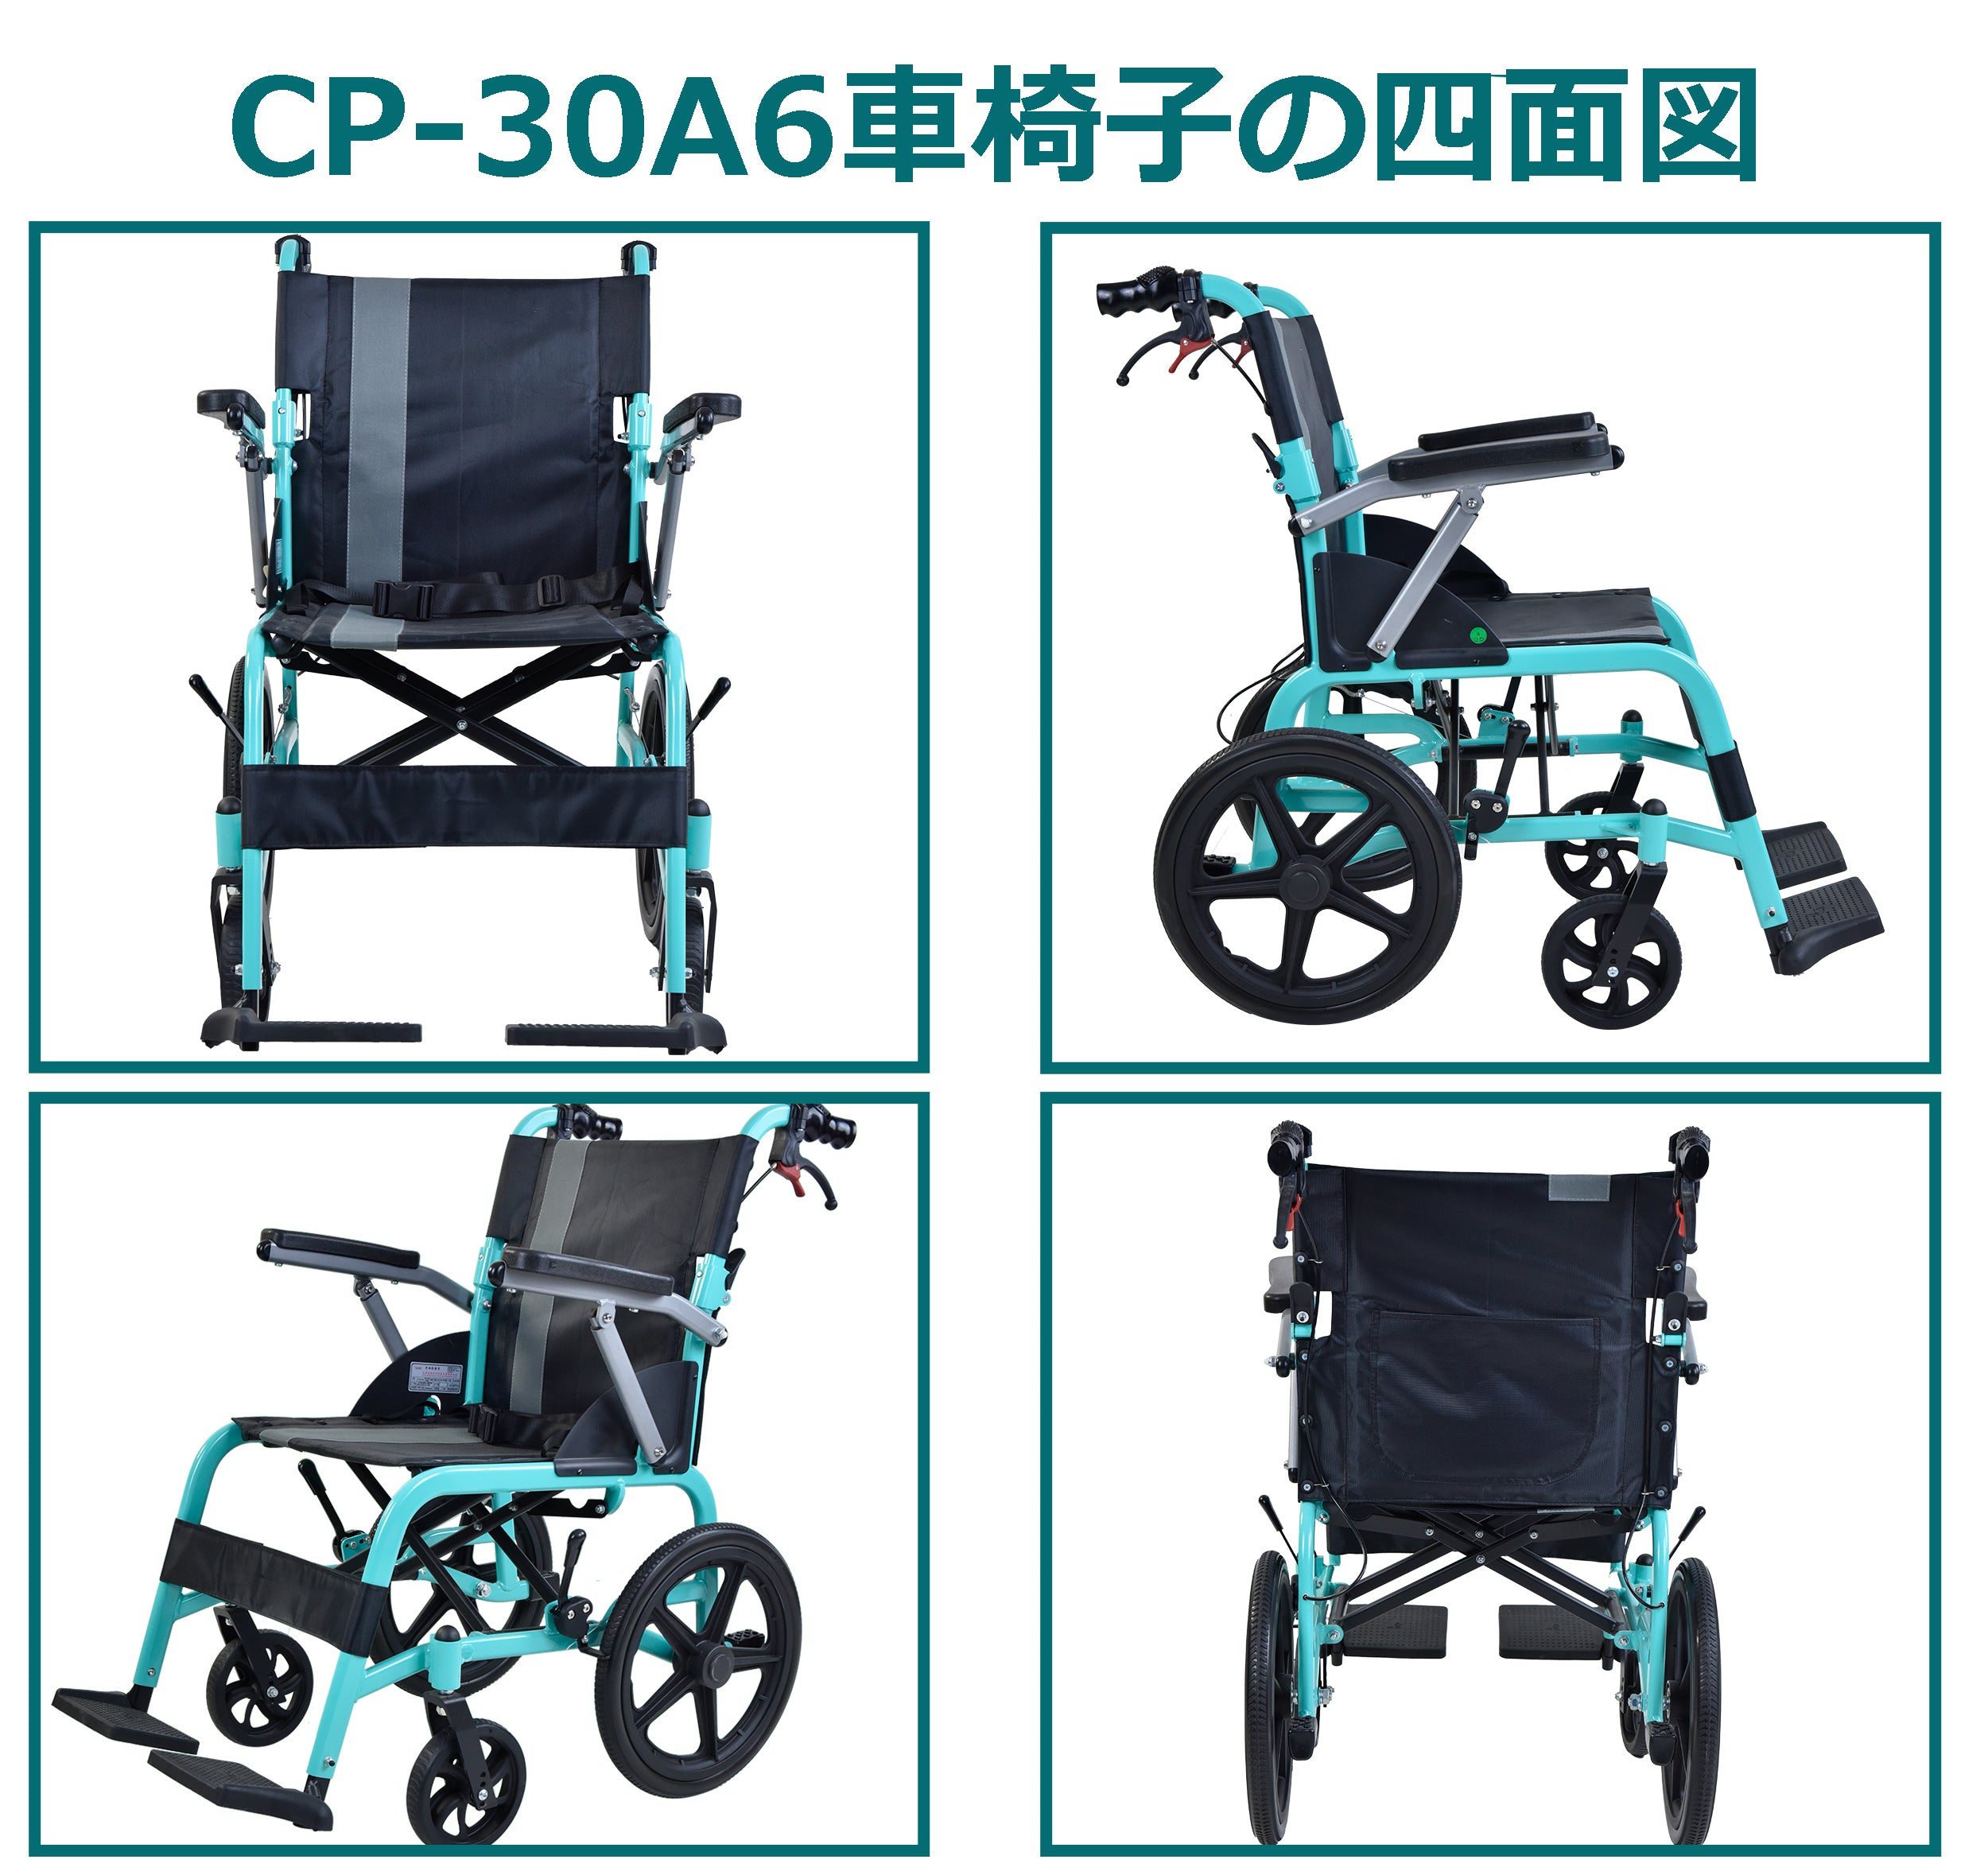 Care-Parents 介助型車椅子 折りたたみ車イス 手押し軽量車椅子外出用 ブルー(CP-30A6)